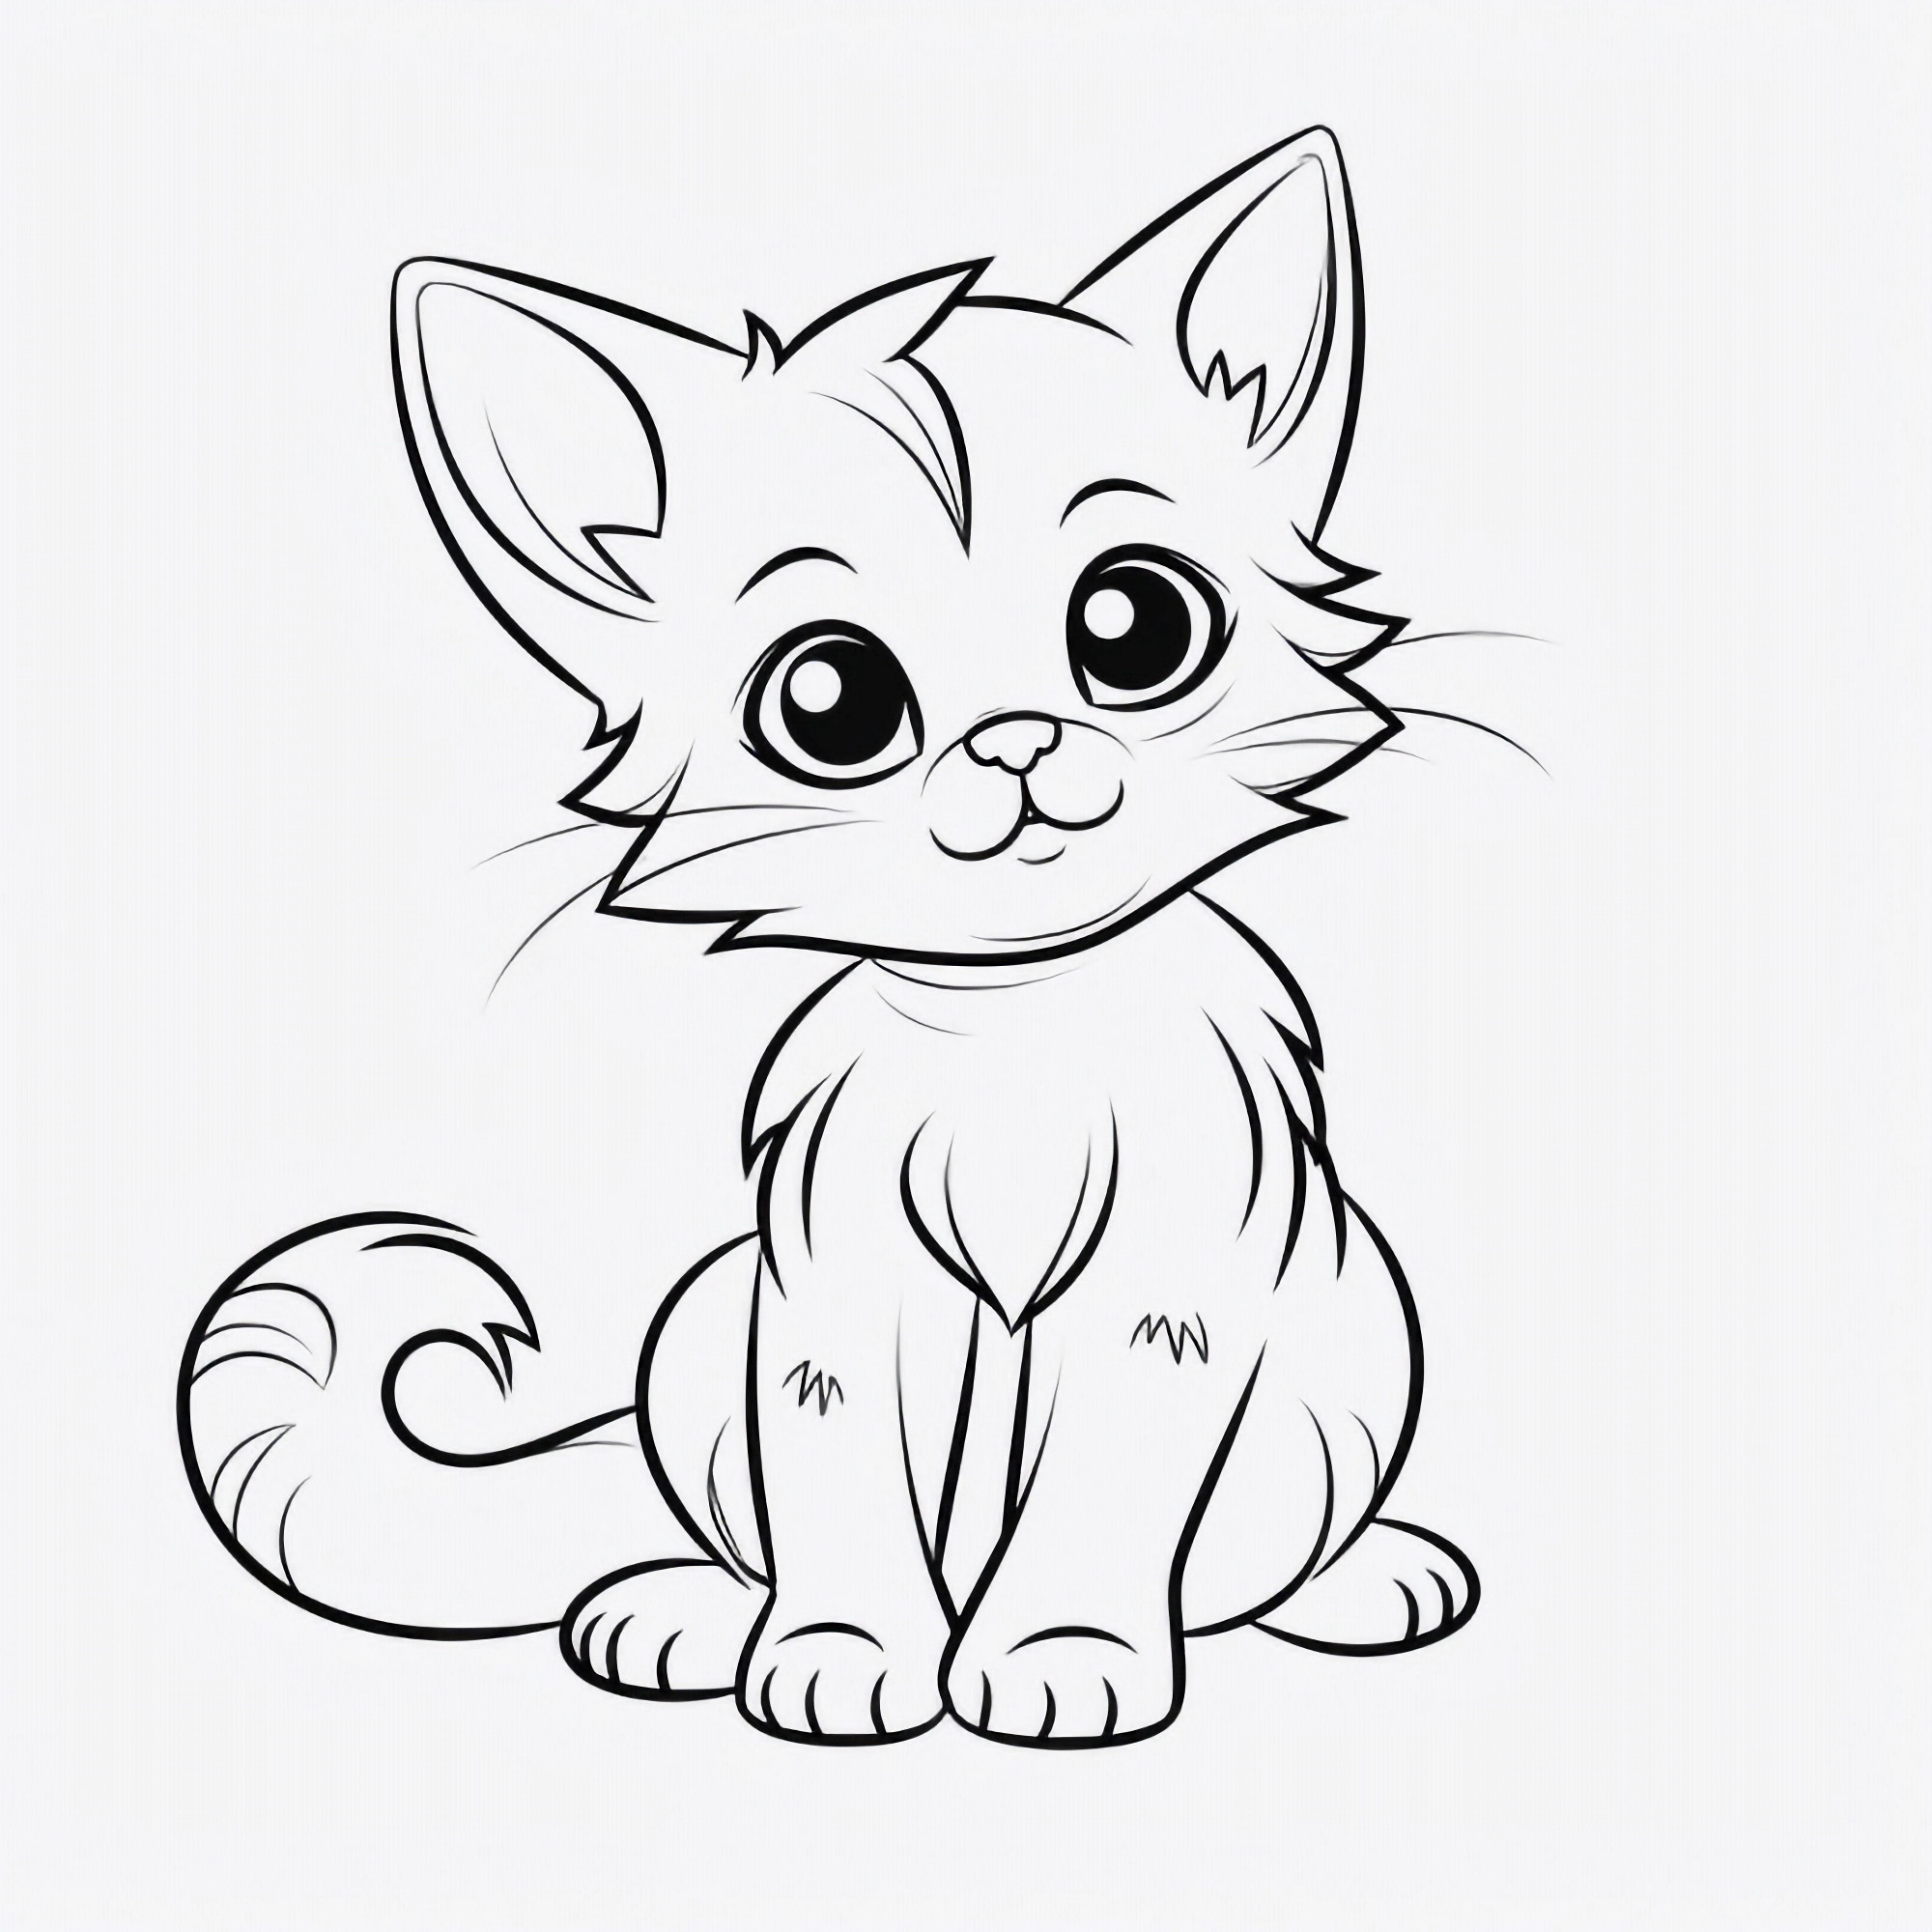 Раскраска для детей: красивый кот с пушистым хвостом